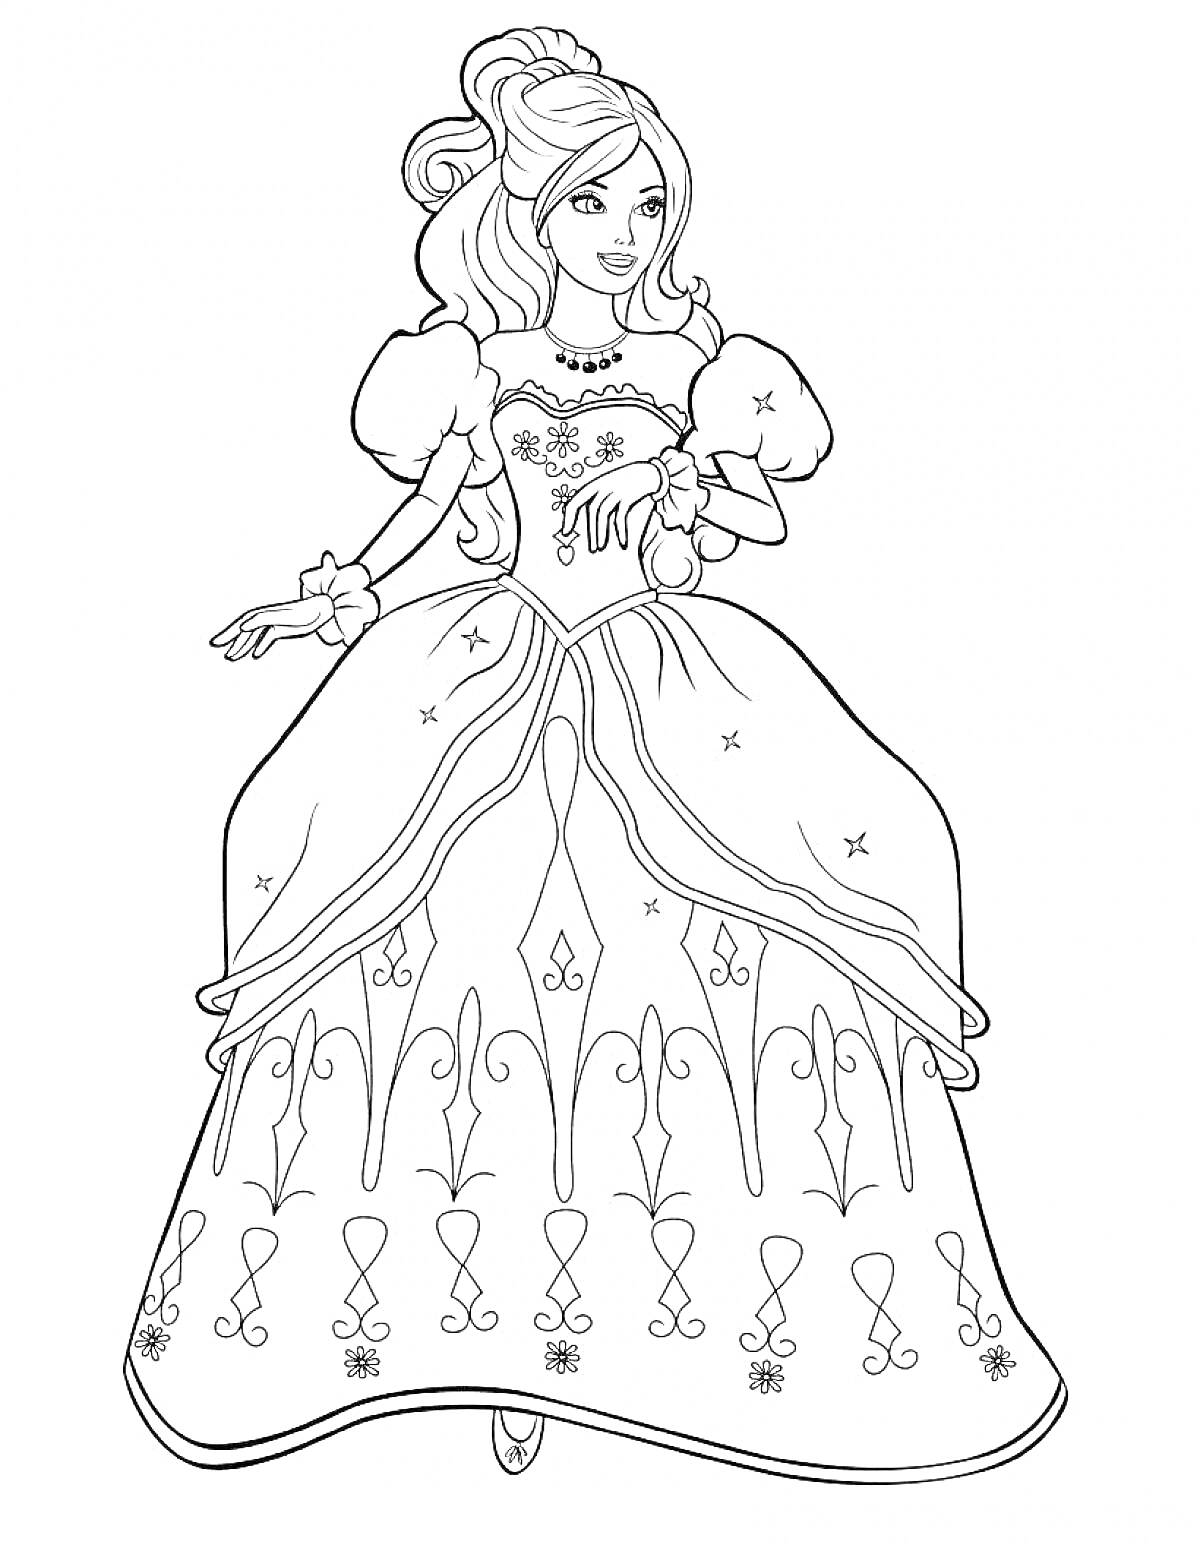 Раскраска Принцесса в пышном платье с длинными волосами